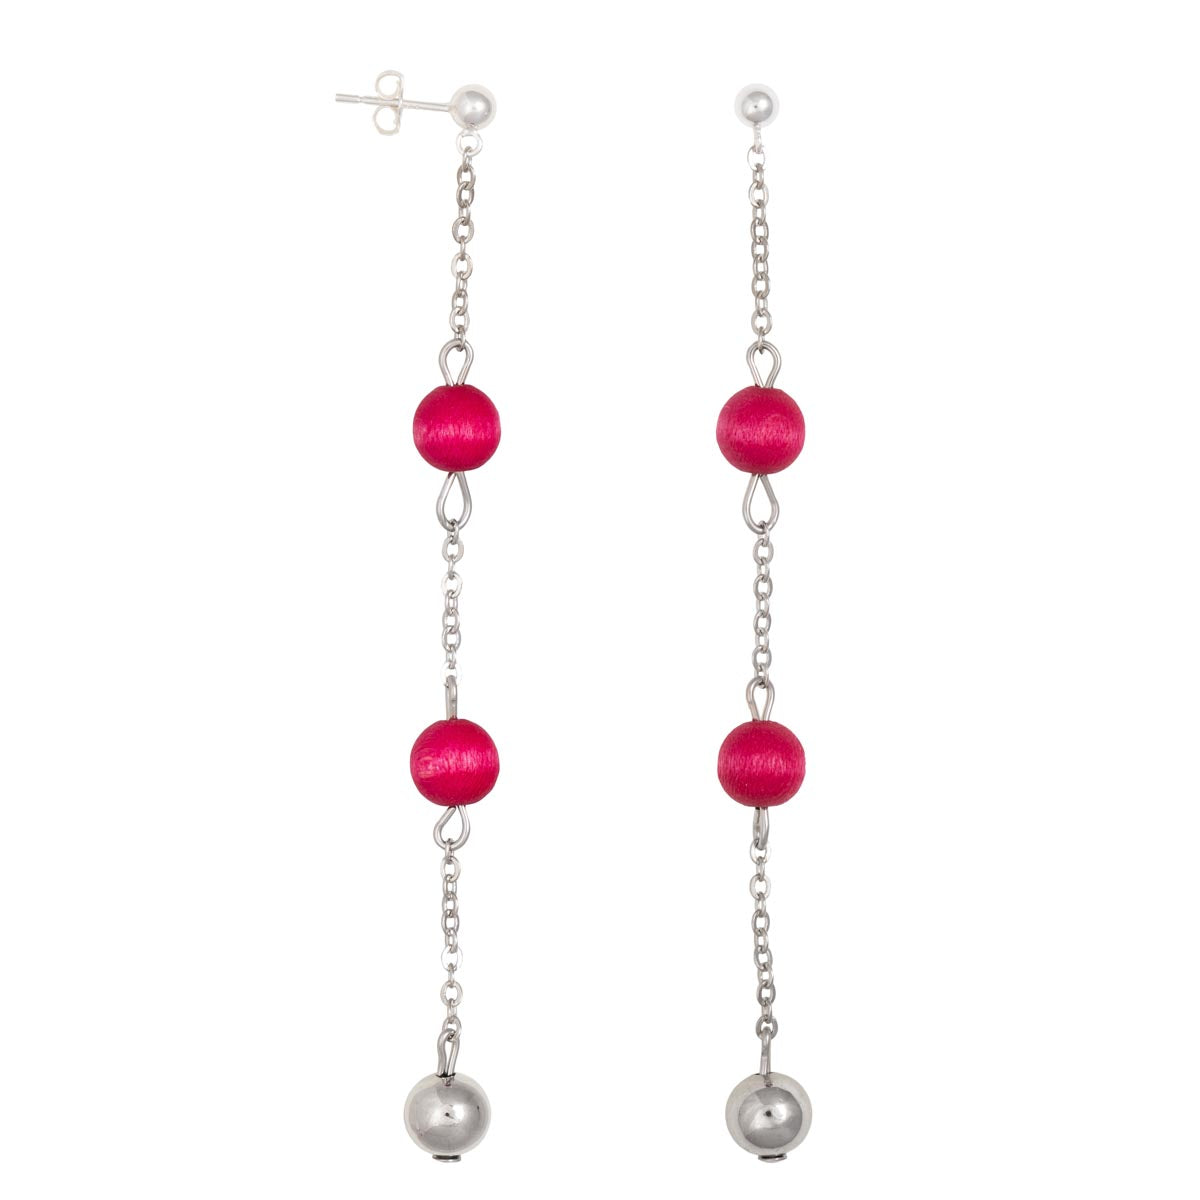 Jade earrings, pink